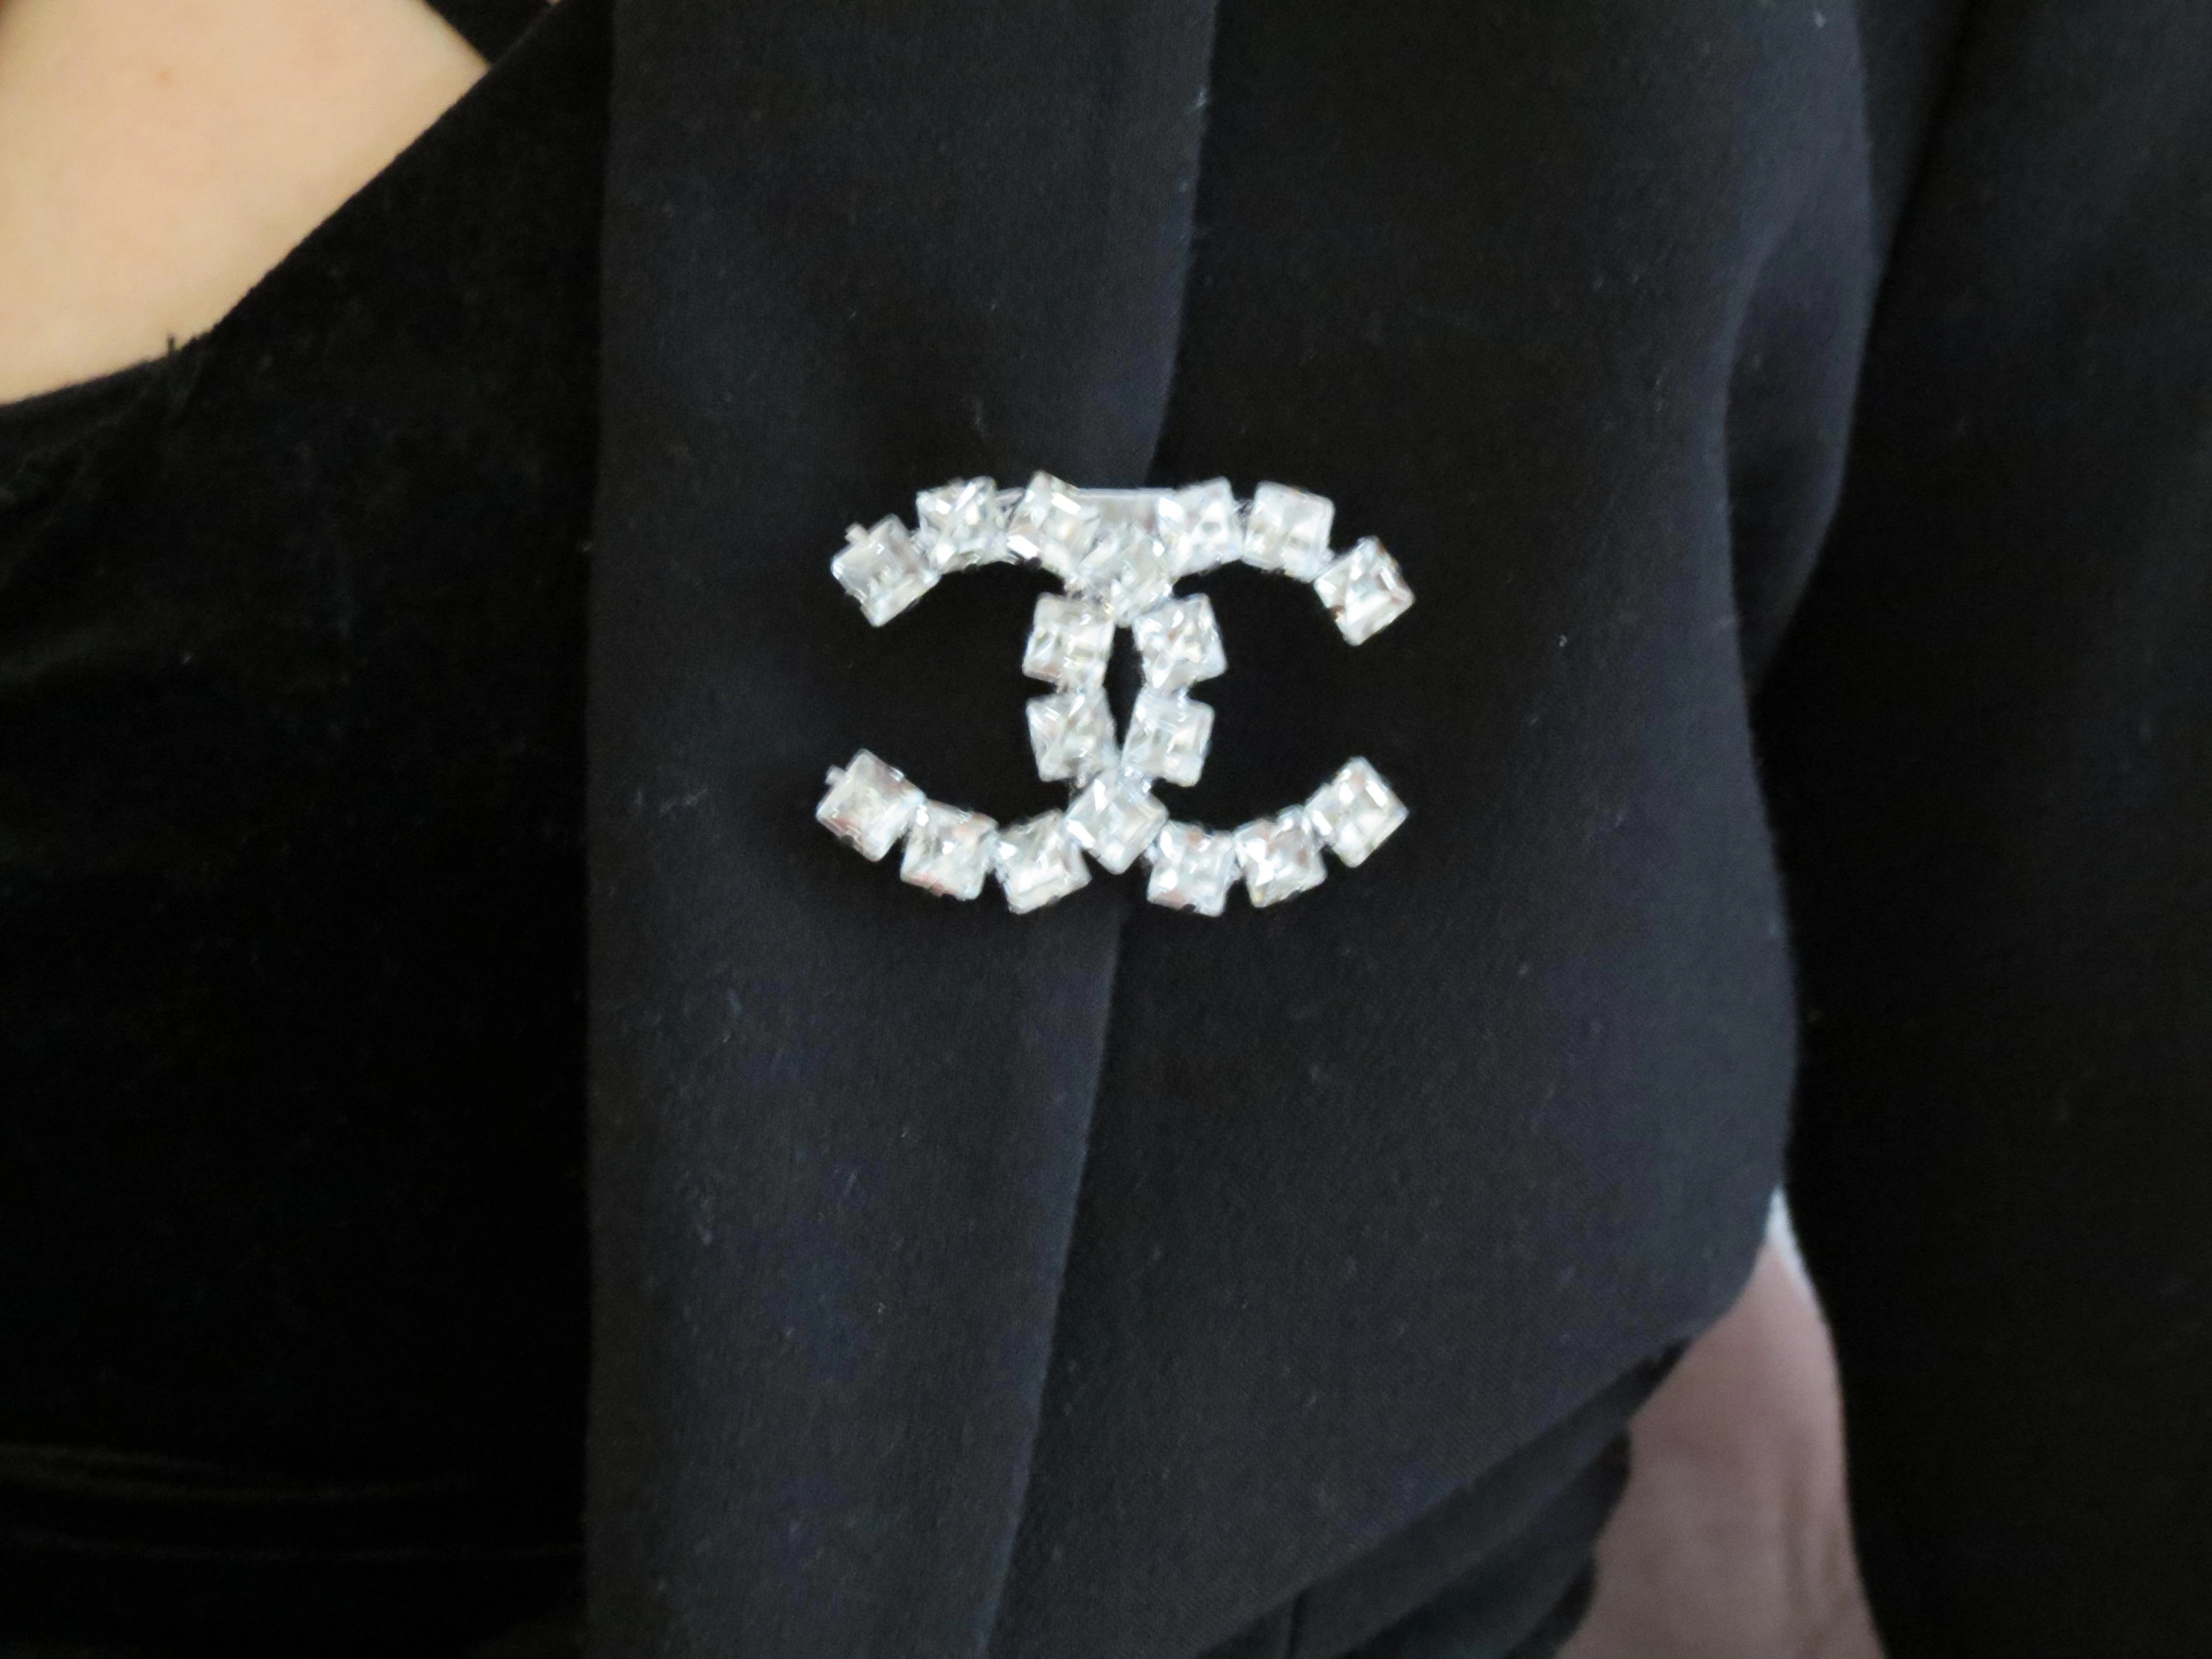 Kadın CC Harf CC Marka Model Kare Kristal Zirkon Taşlı Gümüş Kaplama Zarif Yaka İğnesi Broş